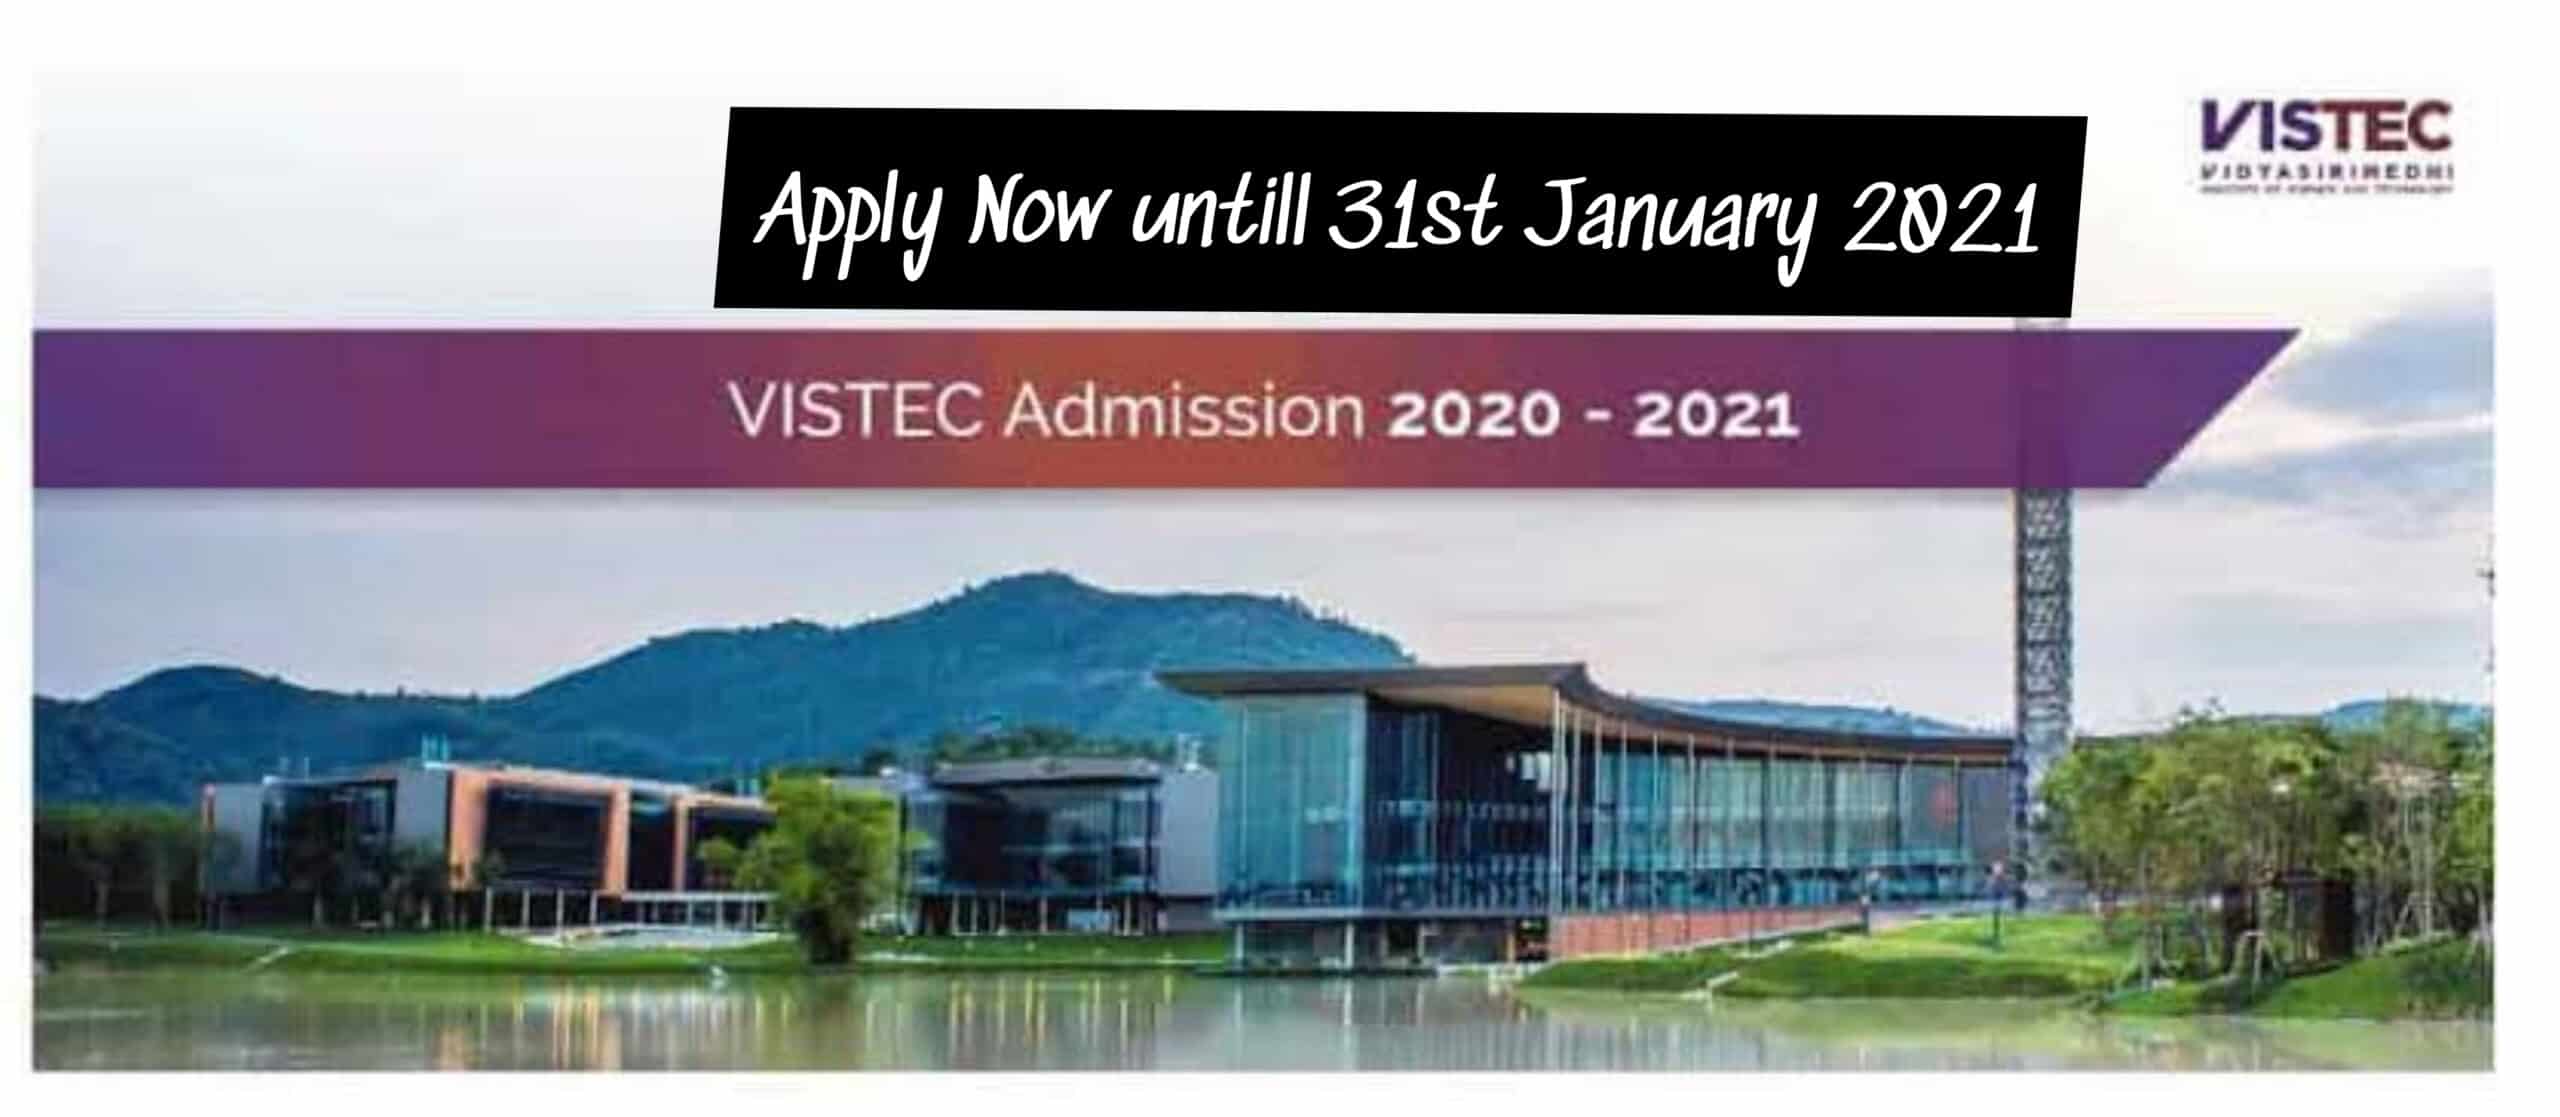 منحة معهد VISTEC لدراسة الماجستير والدكتوراه في تايلاند 2021 (ممولة بالكامل)